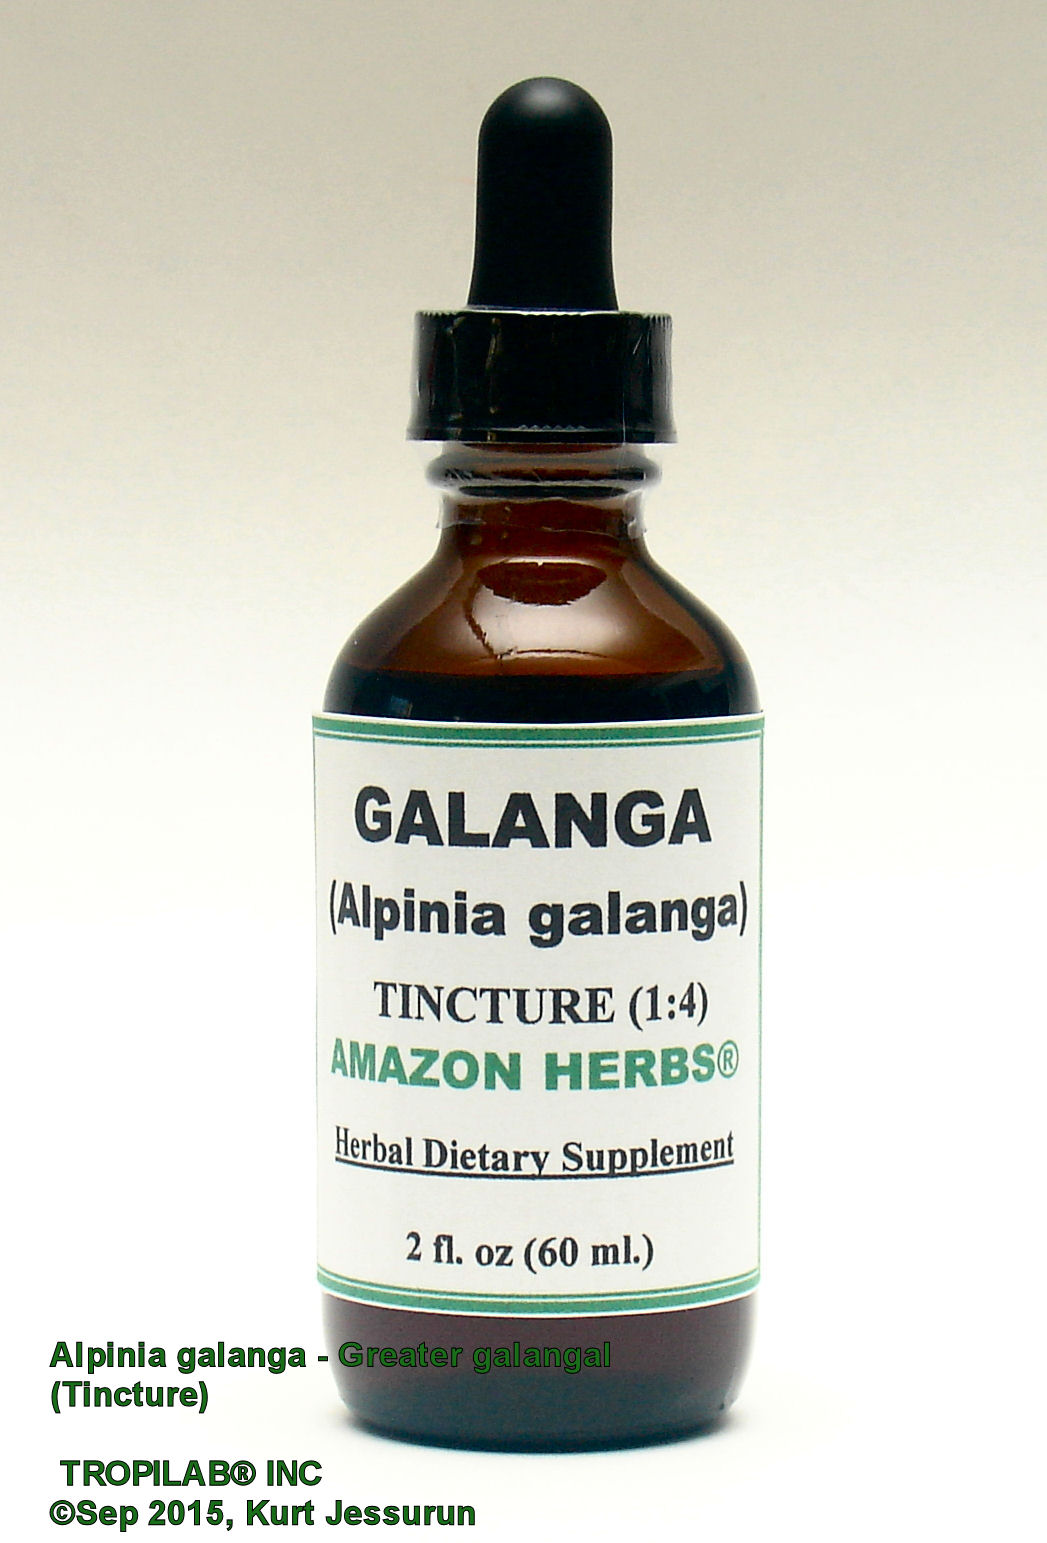 Alpinia galanga - Greater galangal tincture